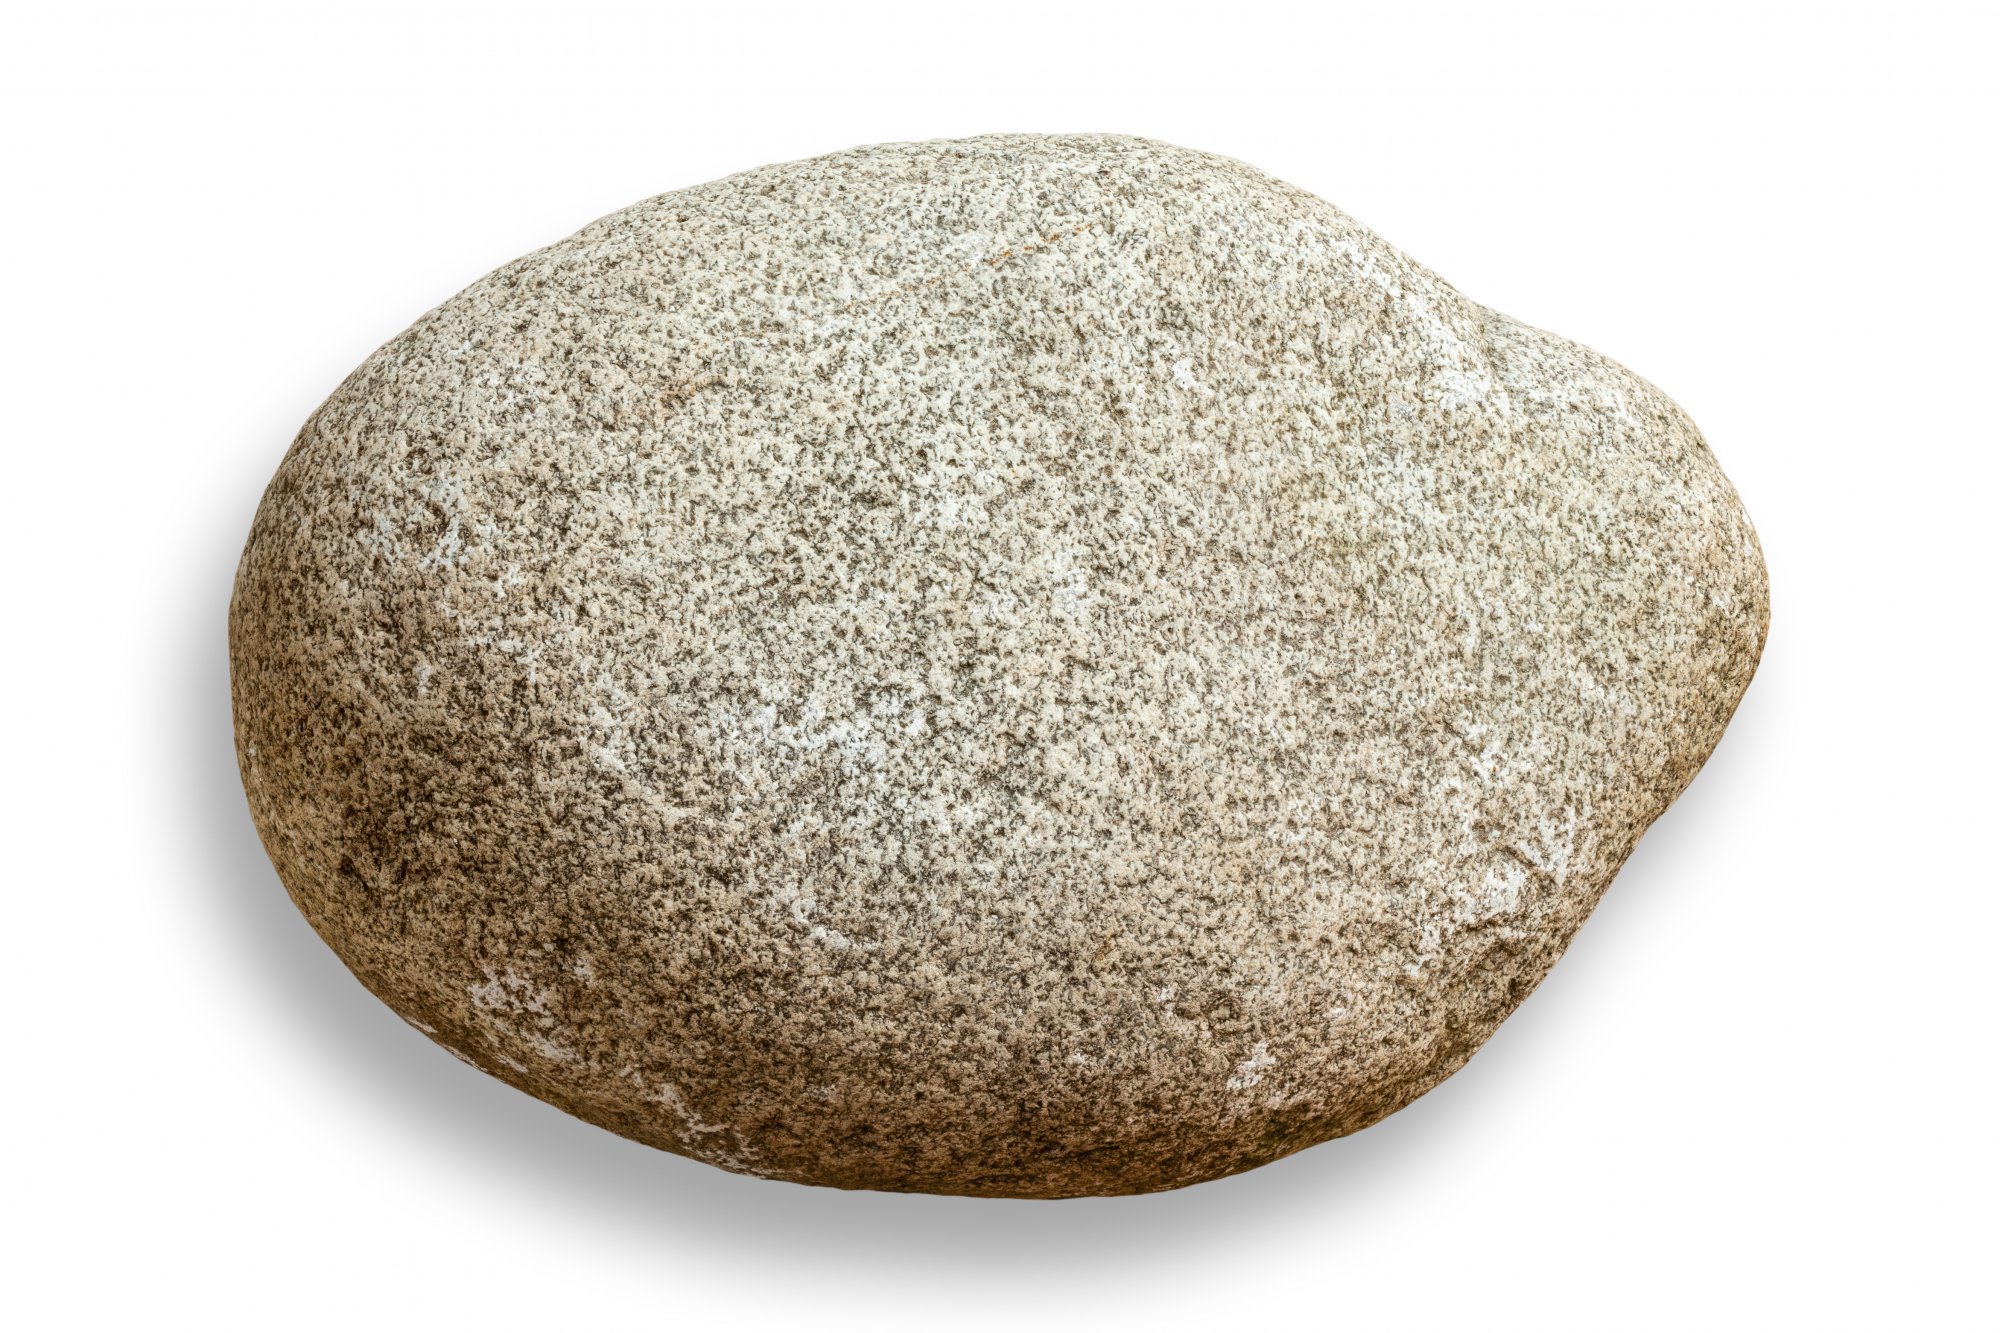 Stone child. Булыжник на белом фоне. Камень для детей. Круглый плоский камень. Камень булыжник.